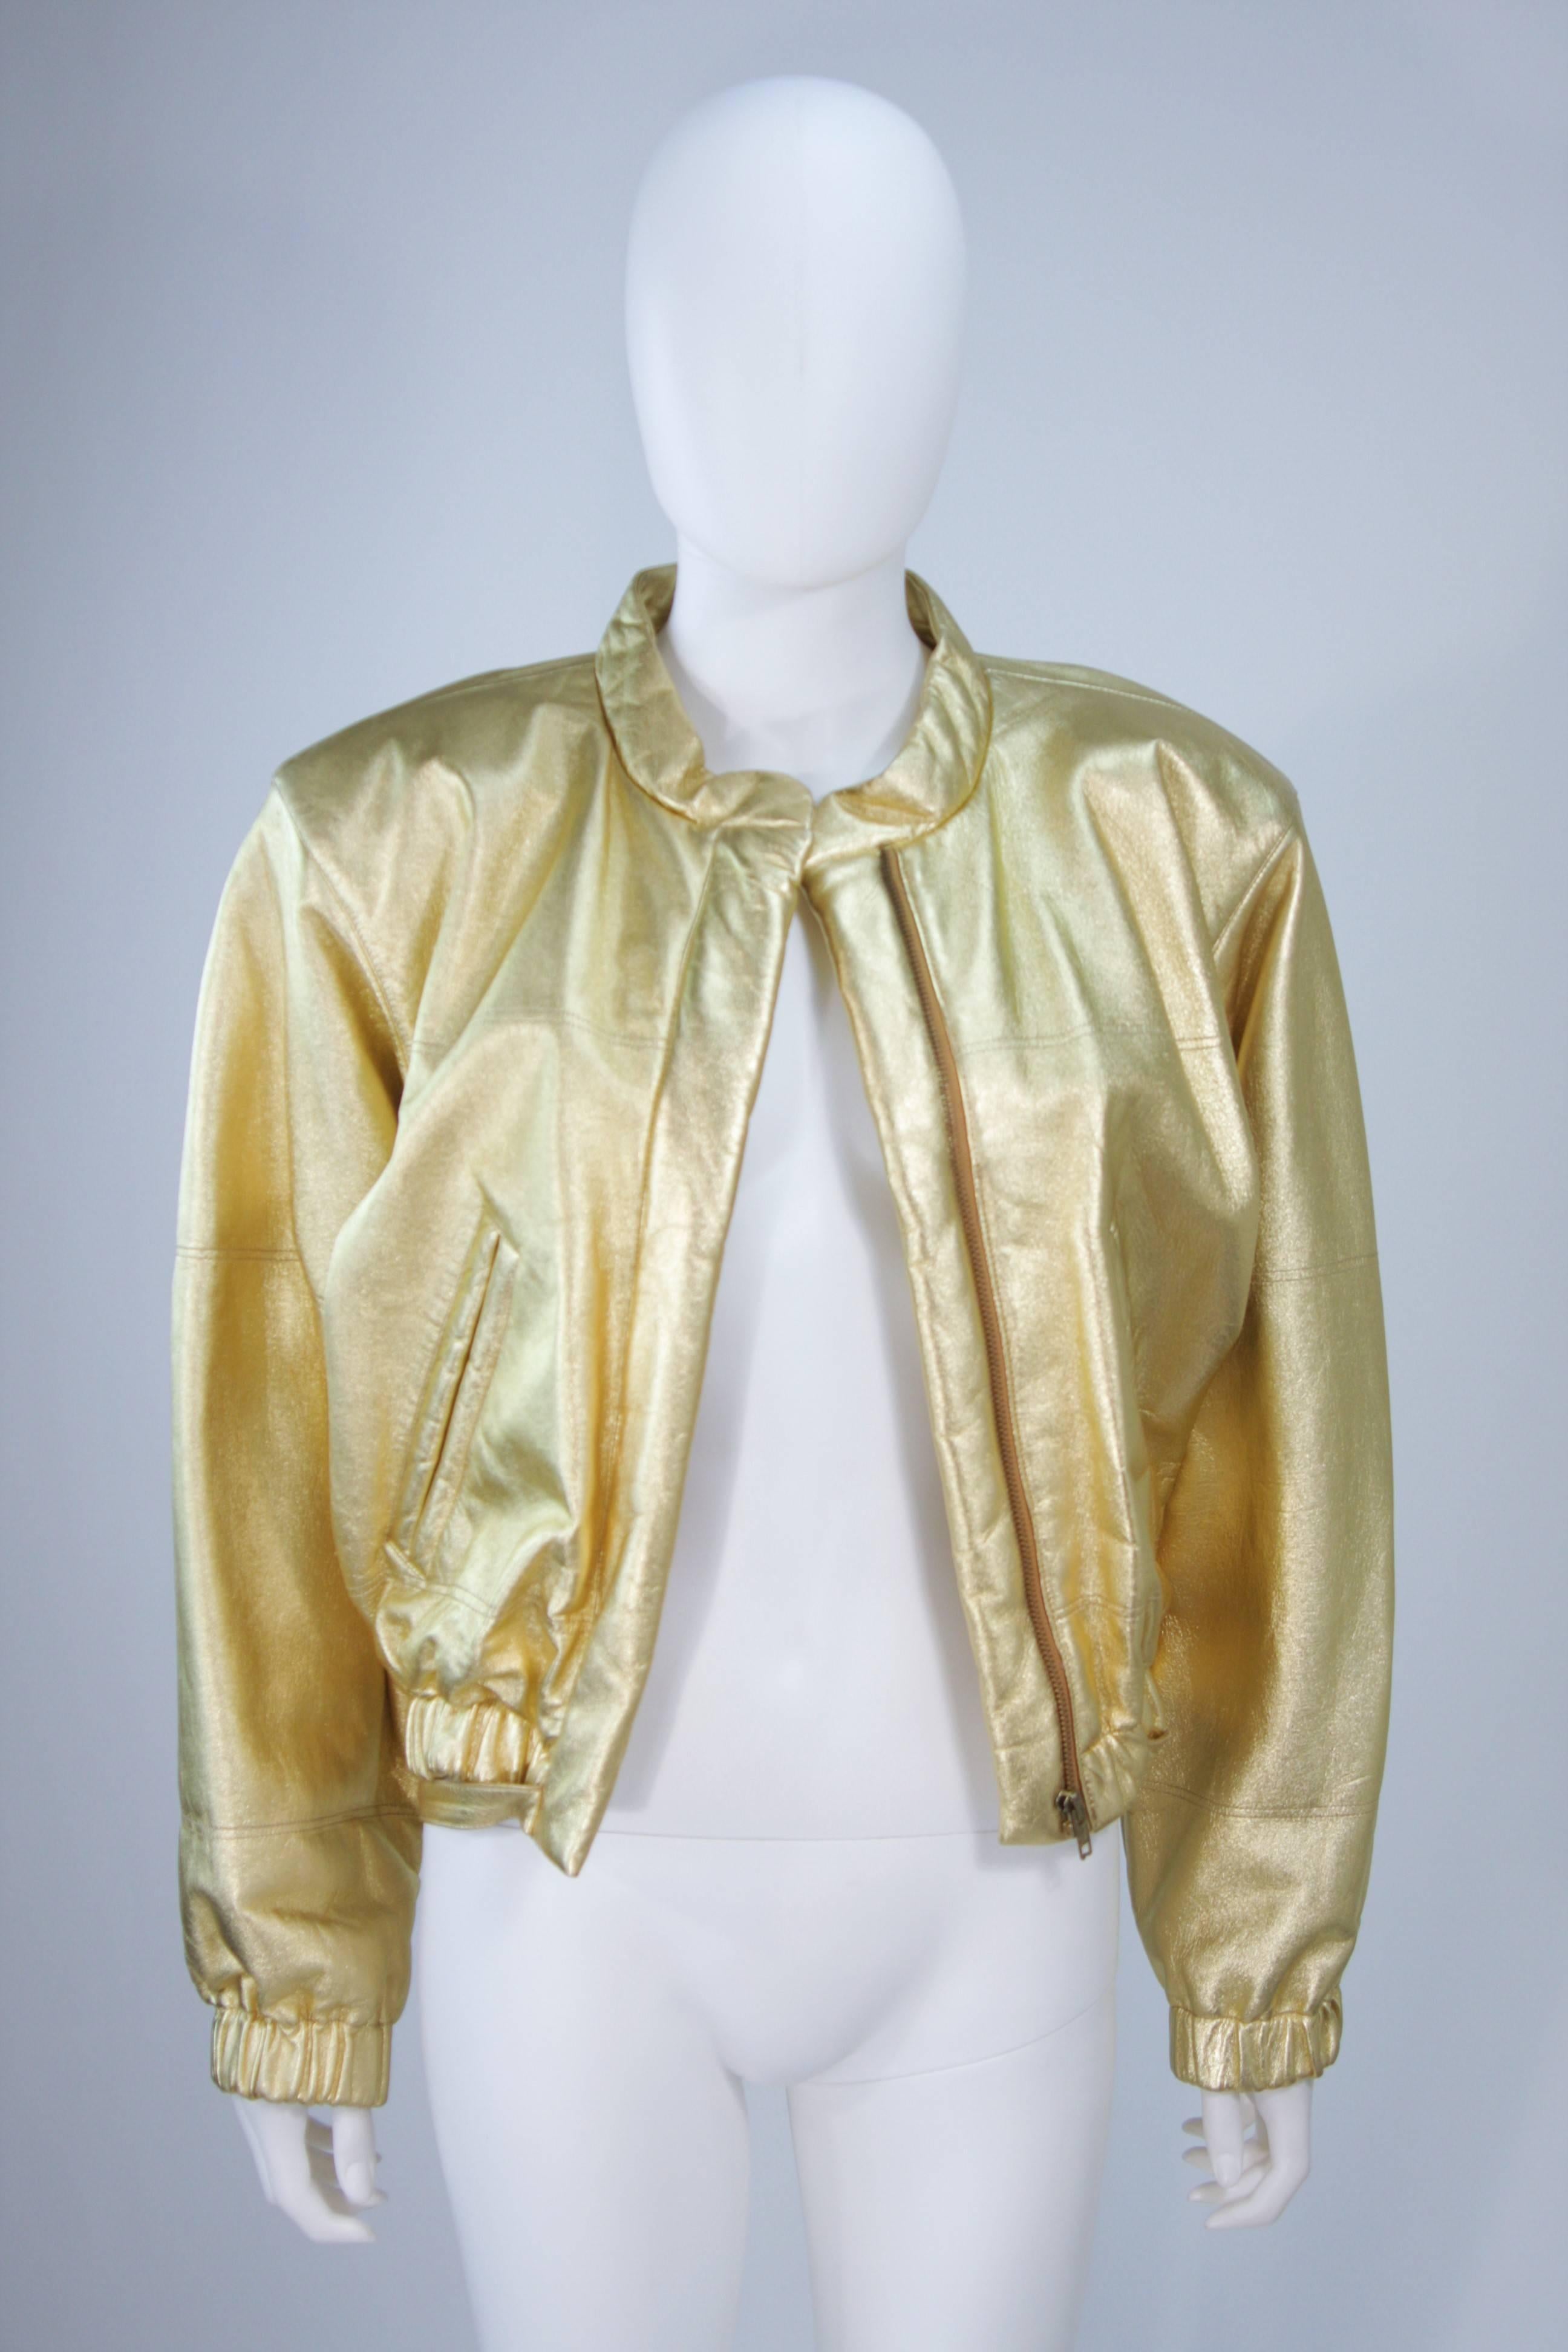 YVES SAINT LAURENT Gold Metallic Leather Bomber Style Jacket Size 6 4